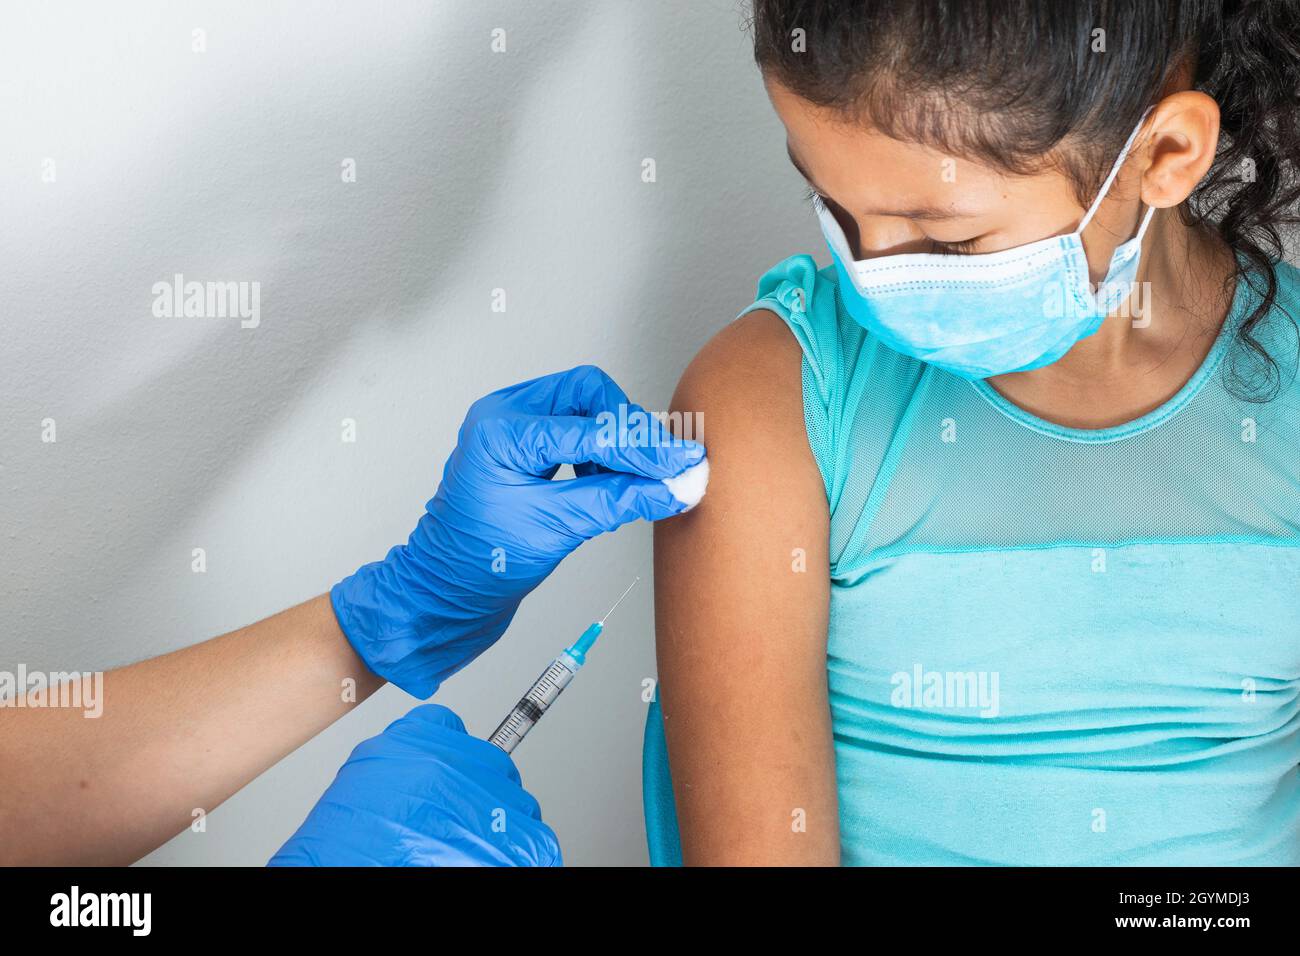 l'infermiera dei bambini pulendo il sangue con la lana di cotone dopo la somministrazione dell'iniezione nel braccio della ragazza marrone. il medico iniettando il vaccino contro covid-19. influenza vacci Foto Stock